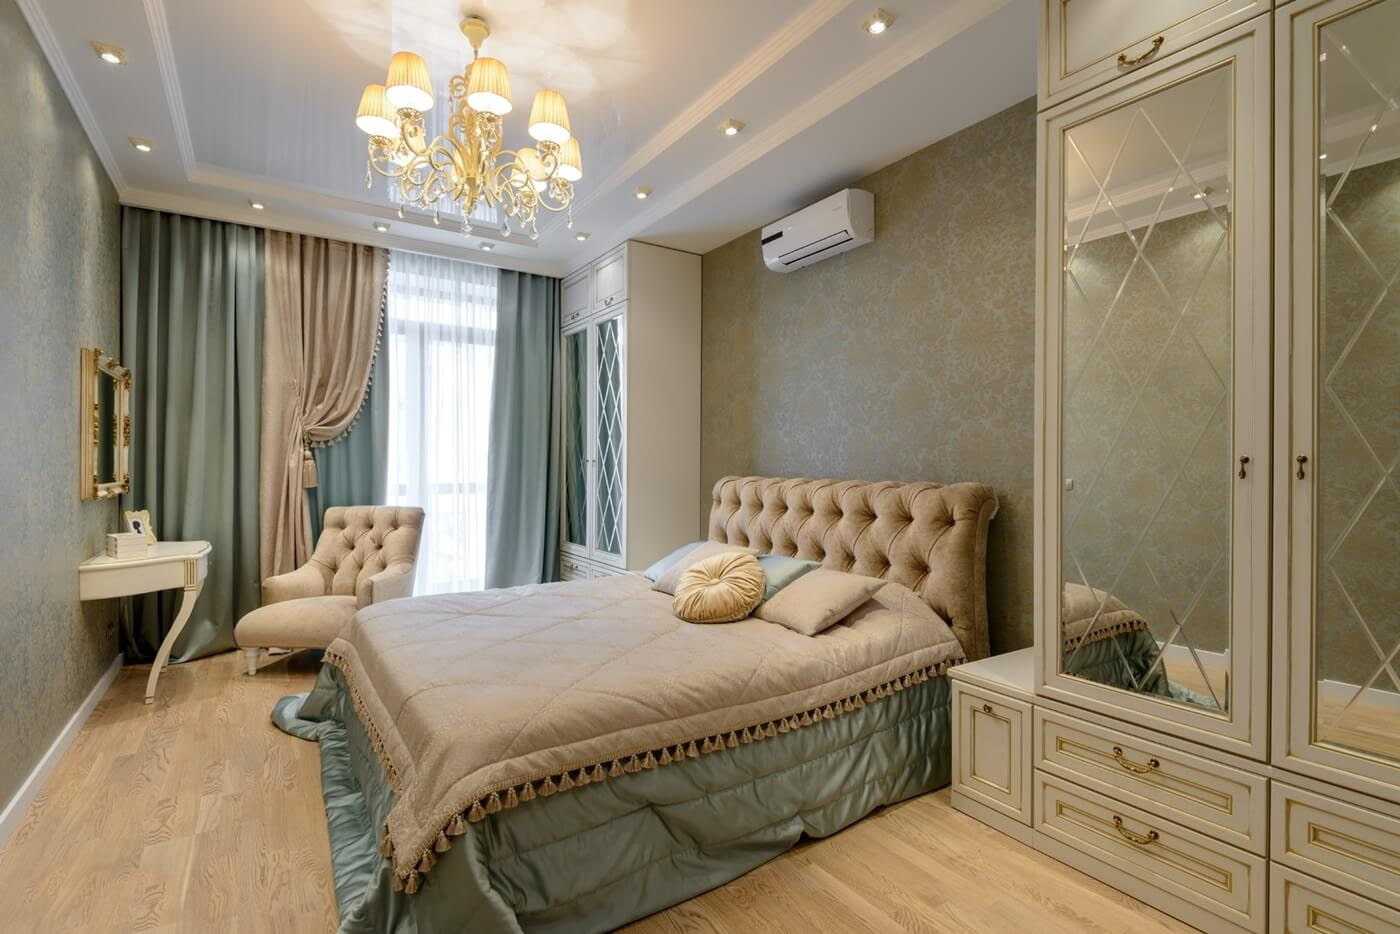 Спальня неоклассика особенности дизайнерского стиля, его нюансы Выбор мебели и текстиля Цветовые решения какие цвета наиболее подходящие Способы зонирования спален